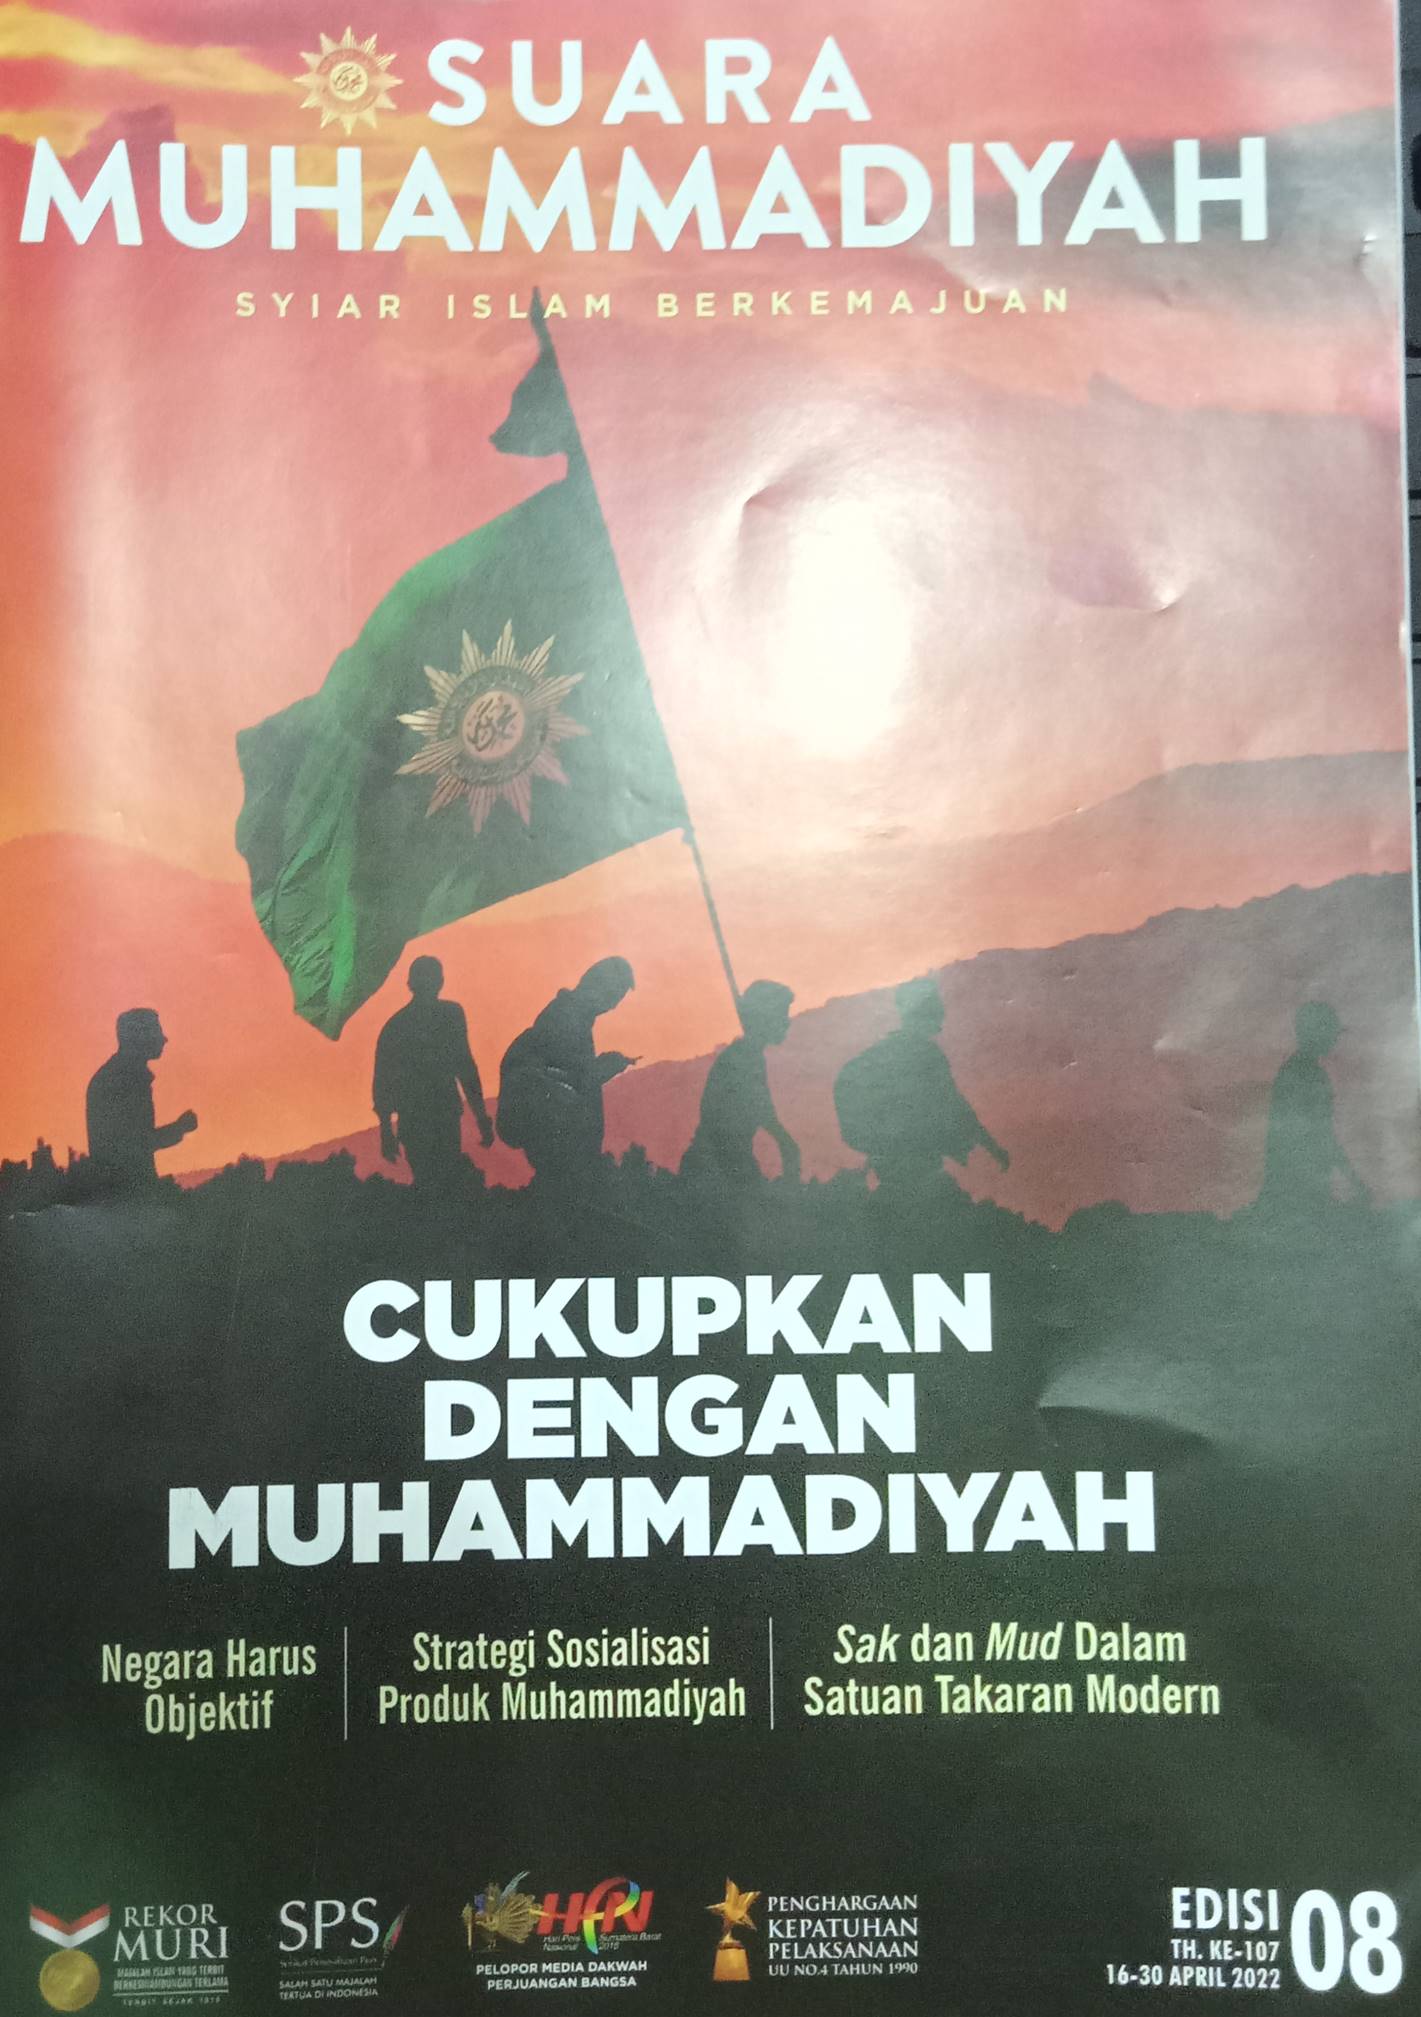 SUARA MUHAMMADIYAH: Syiar Islam Berkemajuan= Cukupkan dengan Muhammadiyah